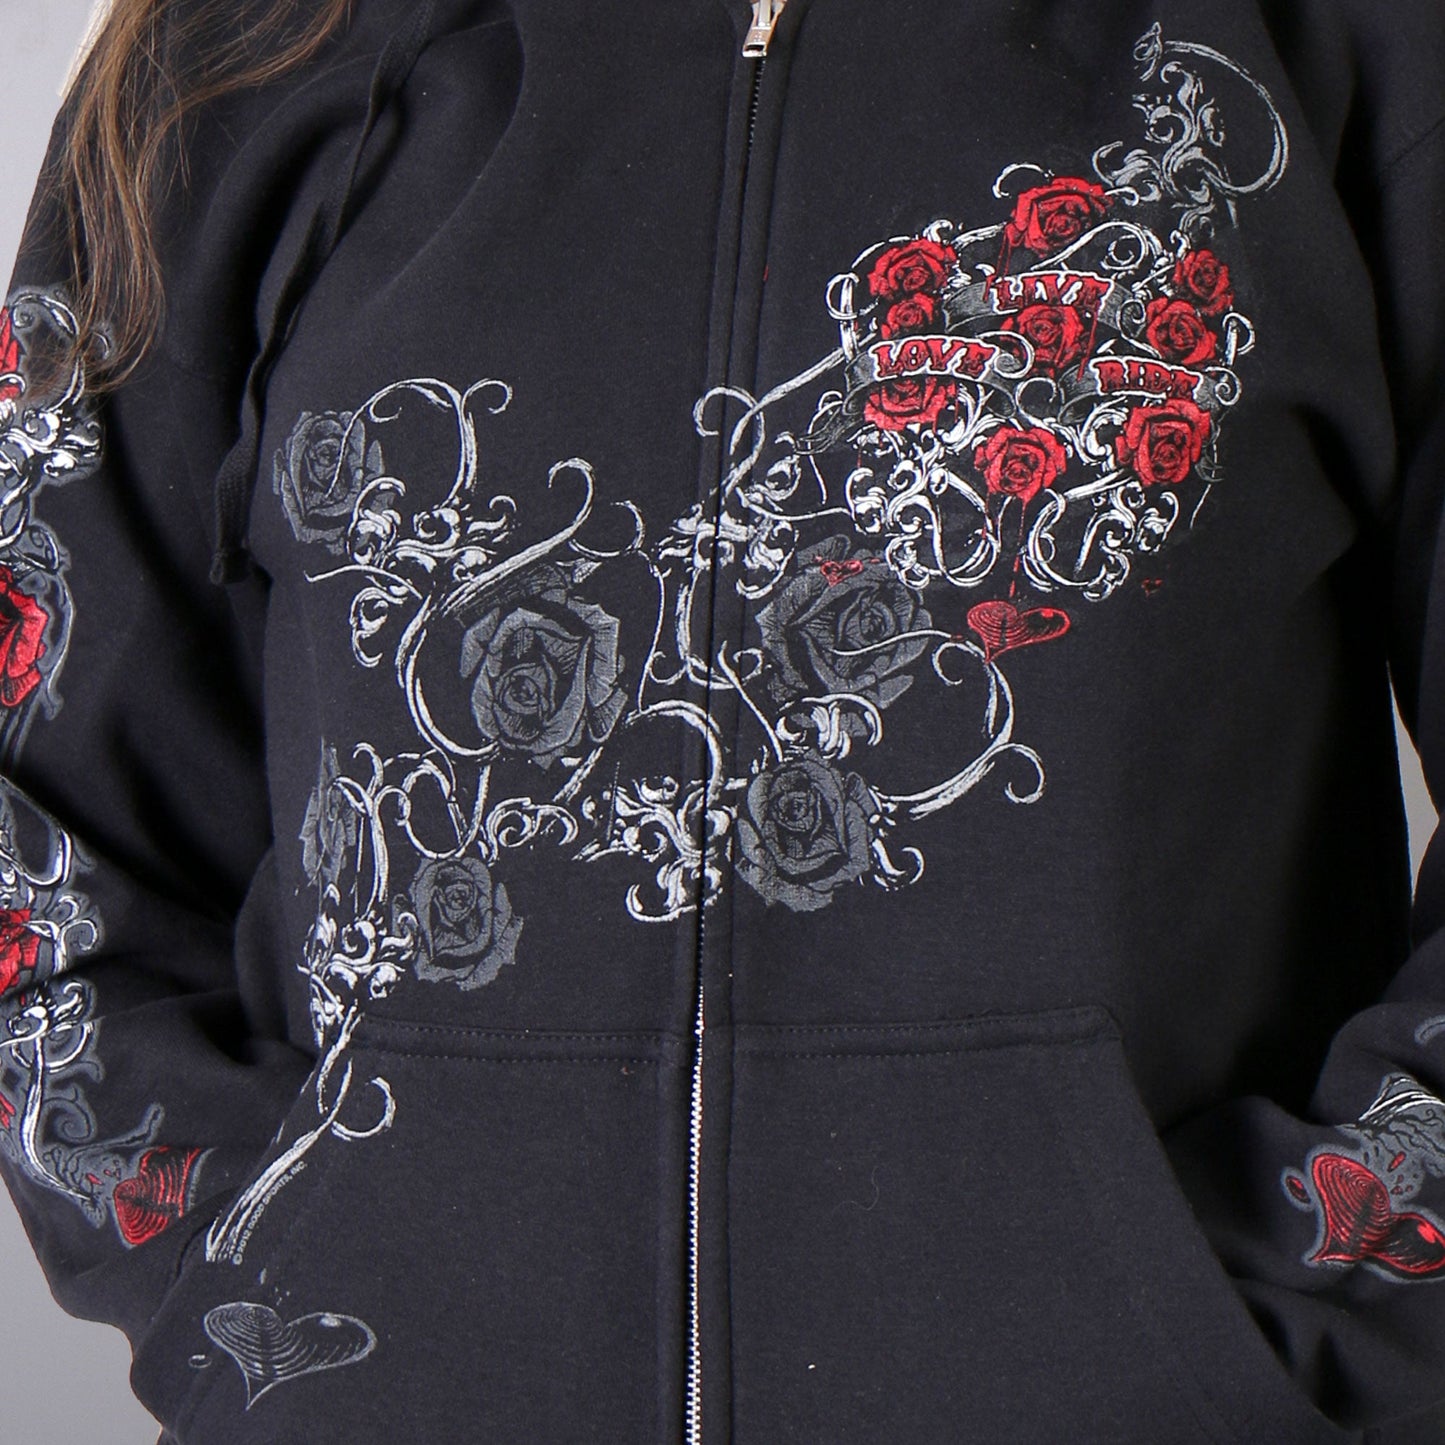 Ladies Black Hoodie Sweatshirt with Live, Love, Ride and Roses Artwork